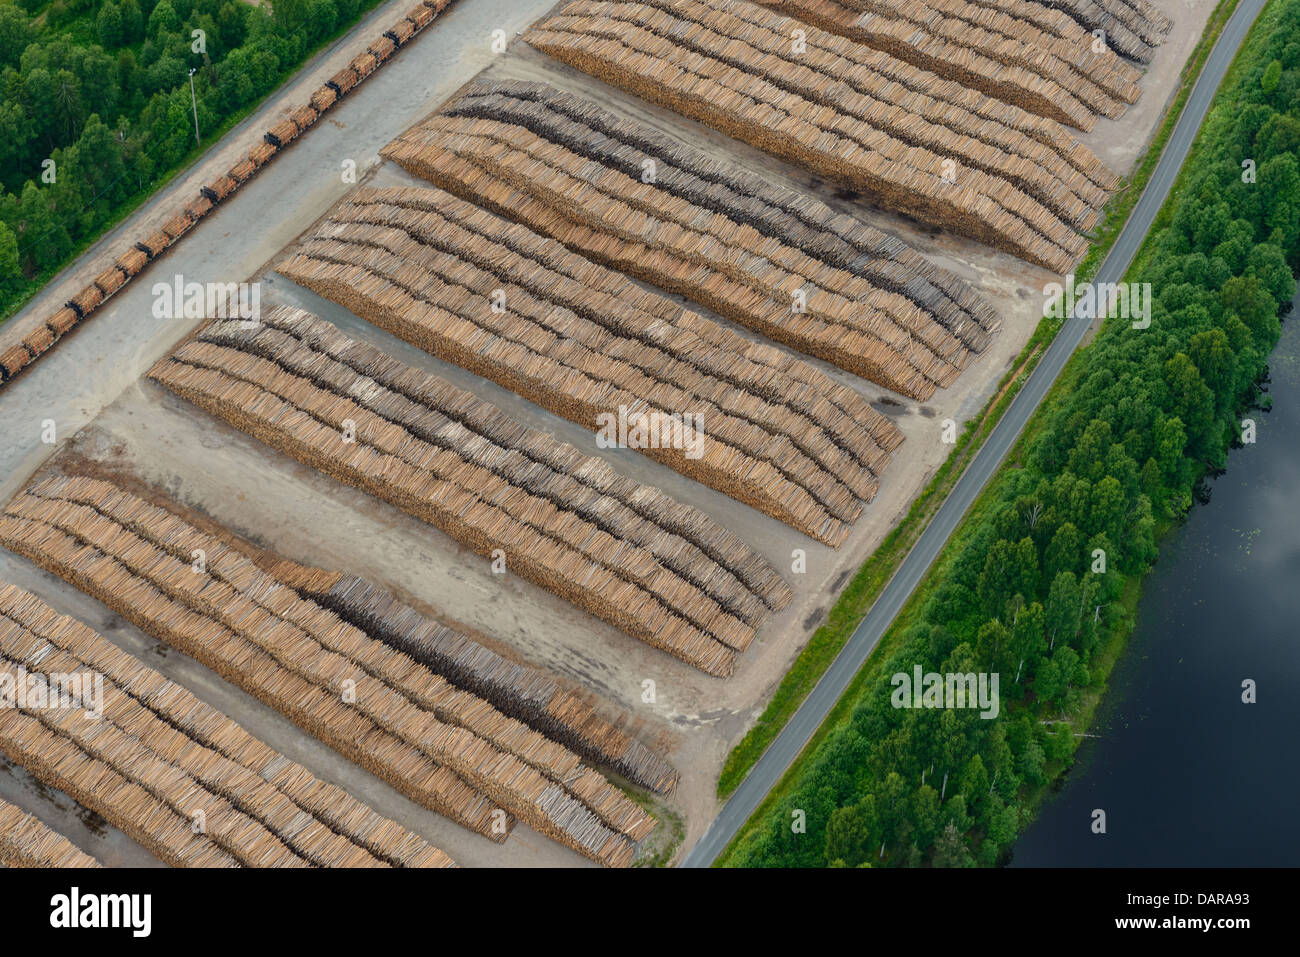 Piles of timber, aerial view, Vansbro, Dalarna, Sweden Stock Photo